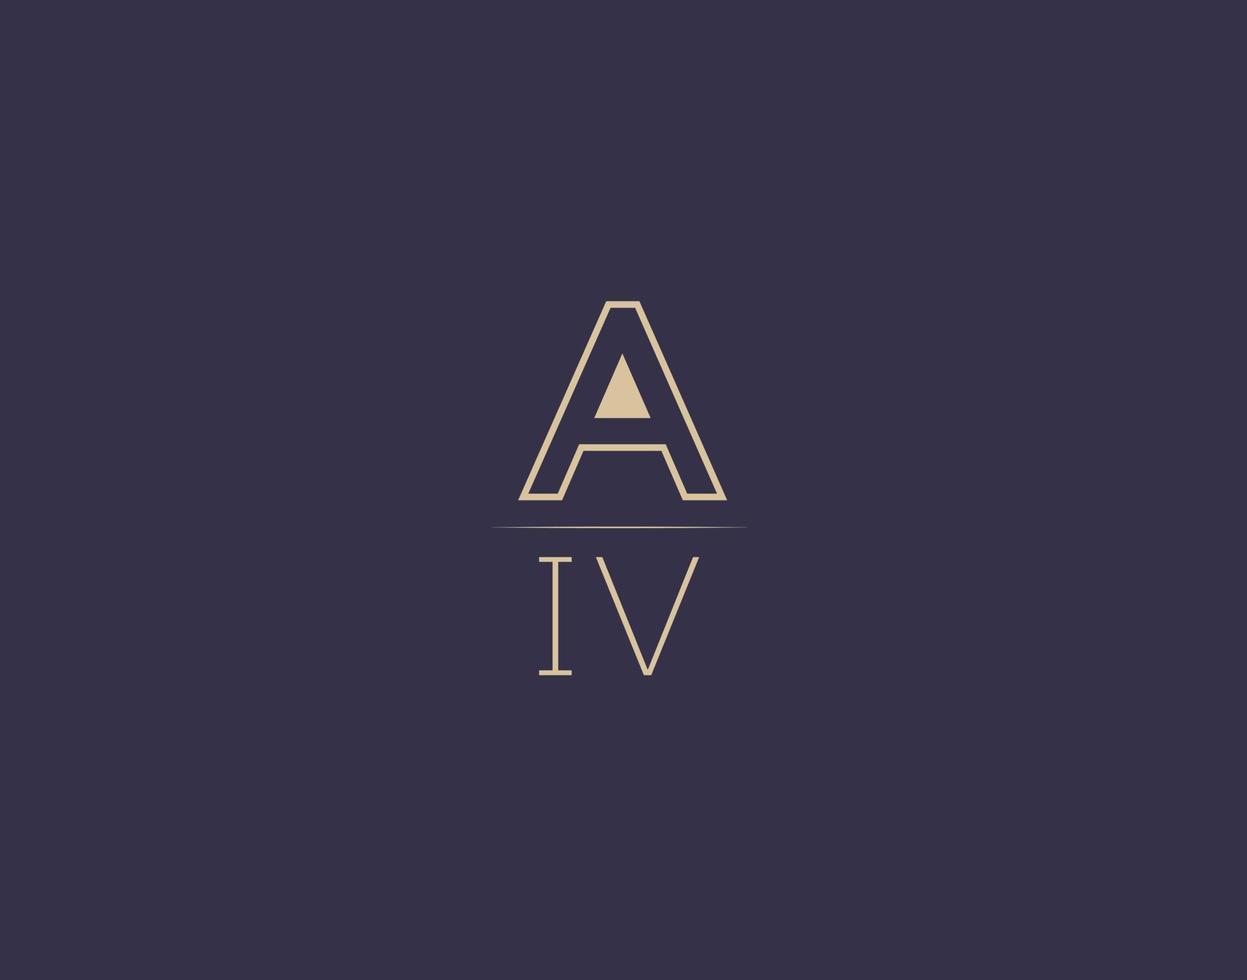 aiv carta logo diseño moderno minimalista vector imágenes